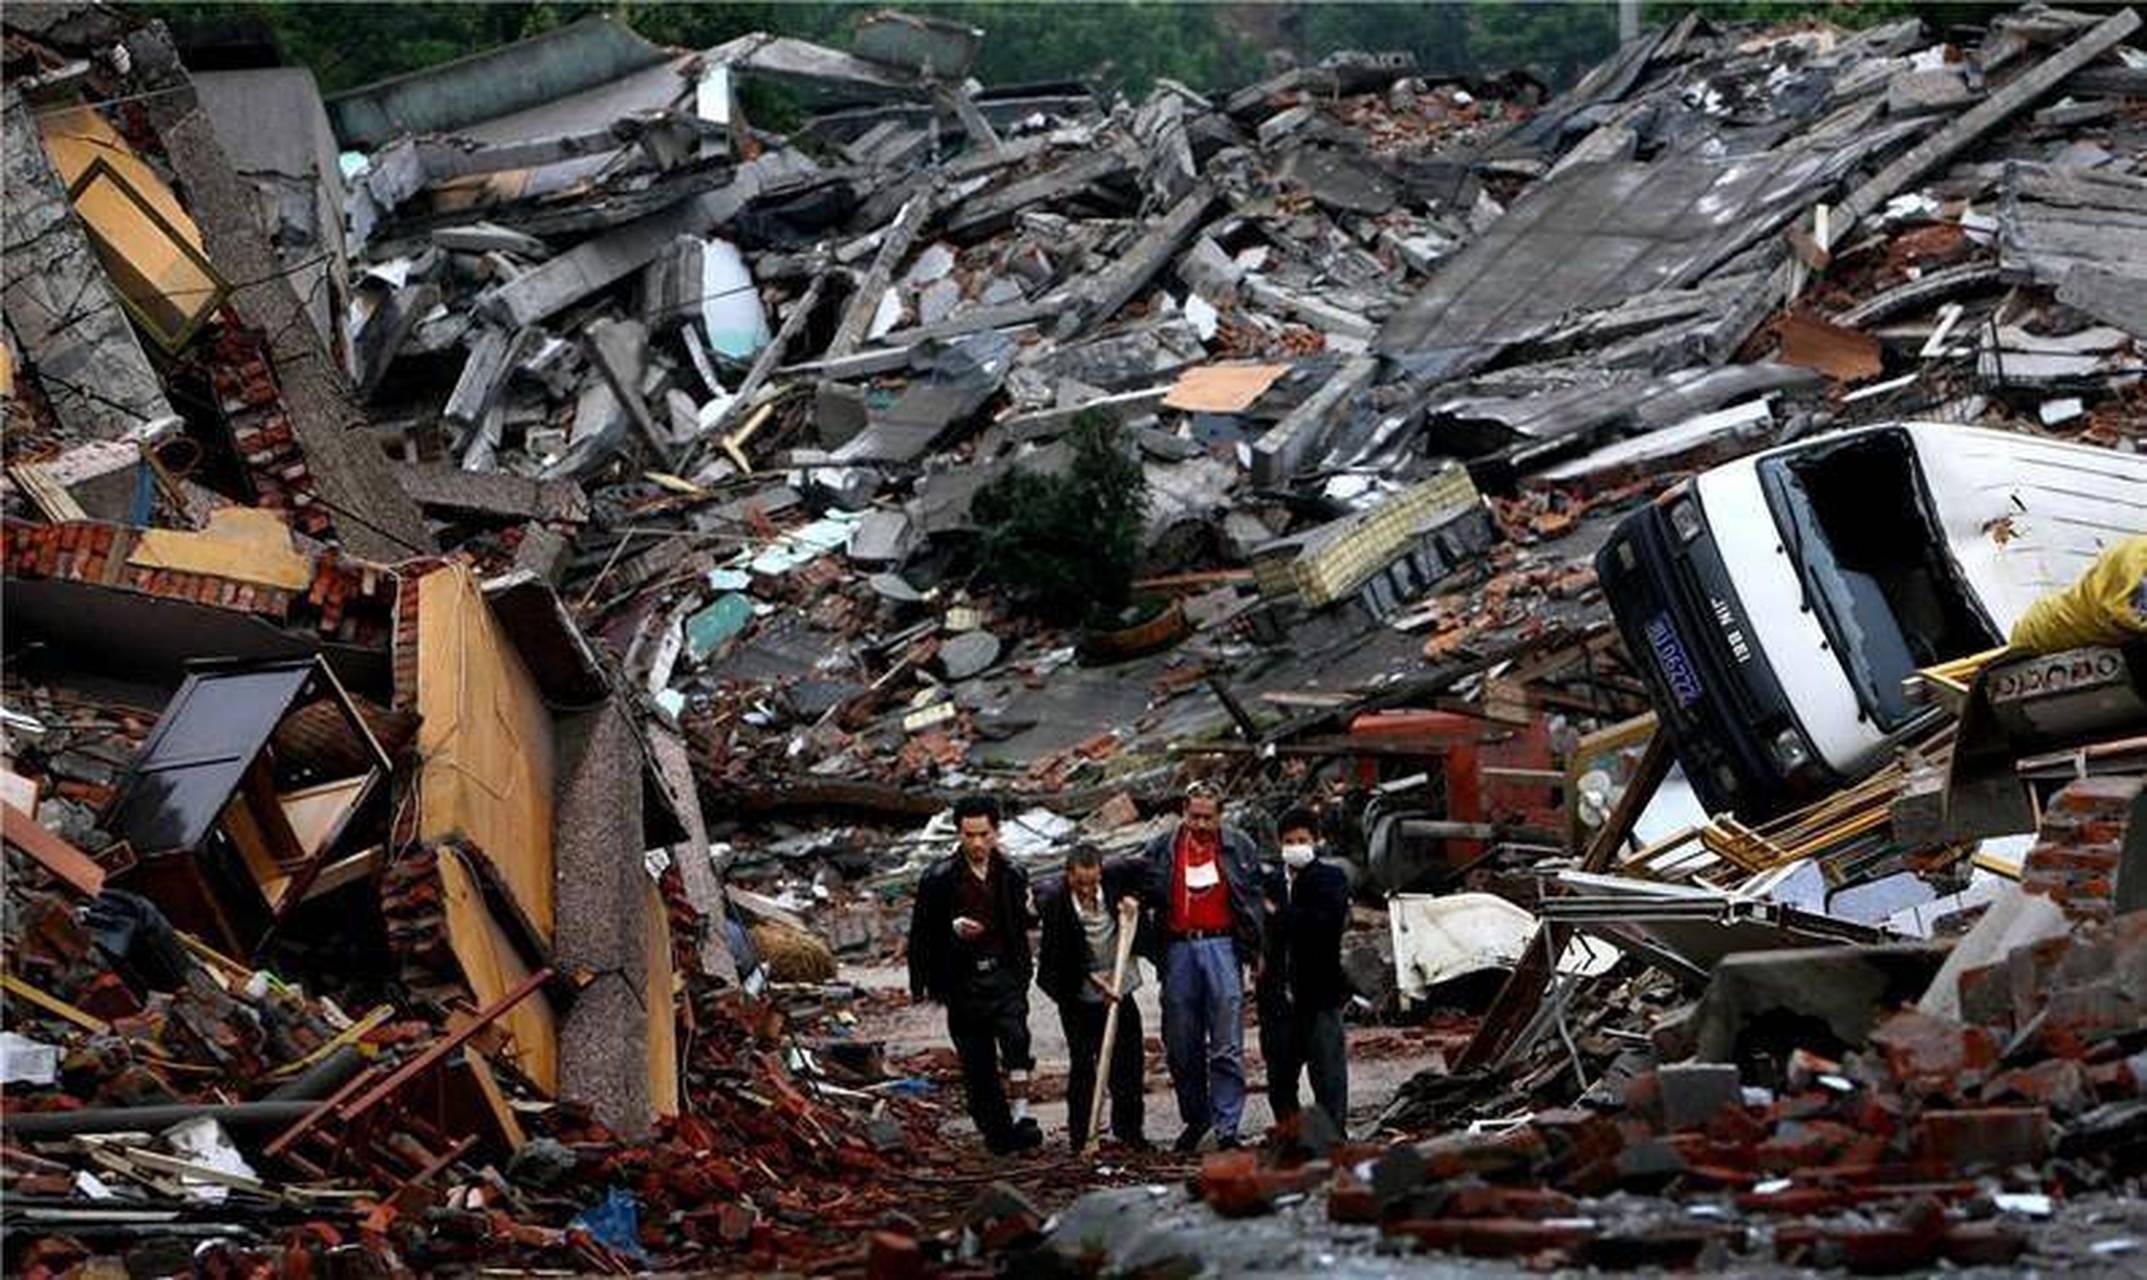 汶川地震频频发生的原因是什么? 地震对我们造成了哪些危害?